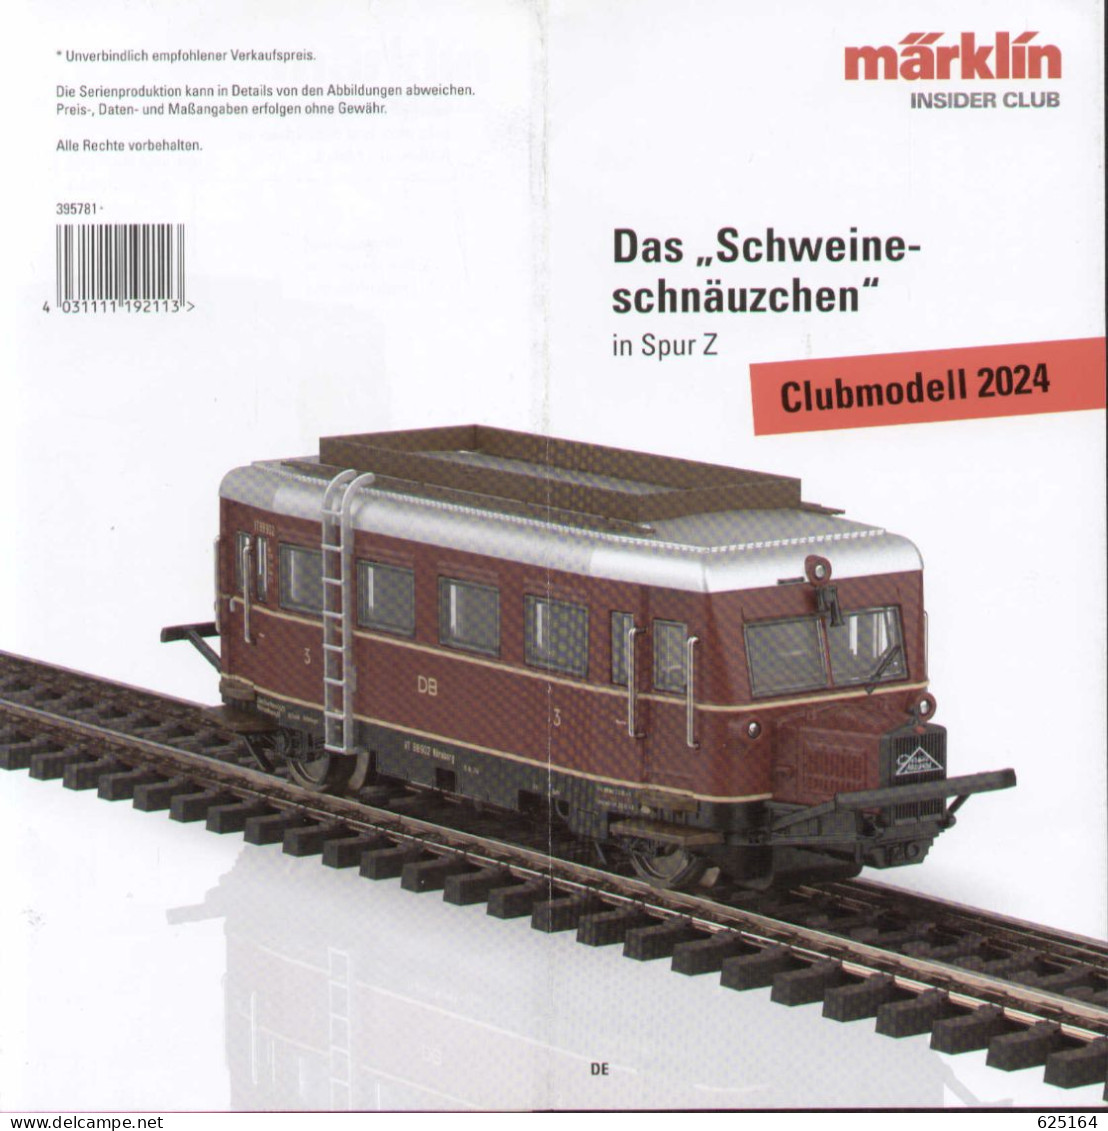 Catalogue MÄRKLIN 2024 INSIDER CLUBMODELL SPUR Z Das Schweine-schnäuzchen - Tedesco